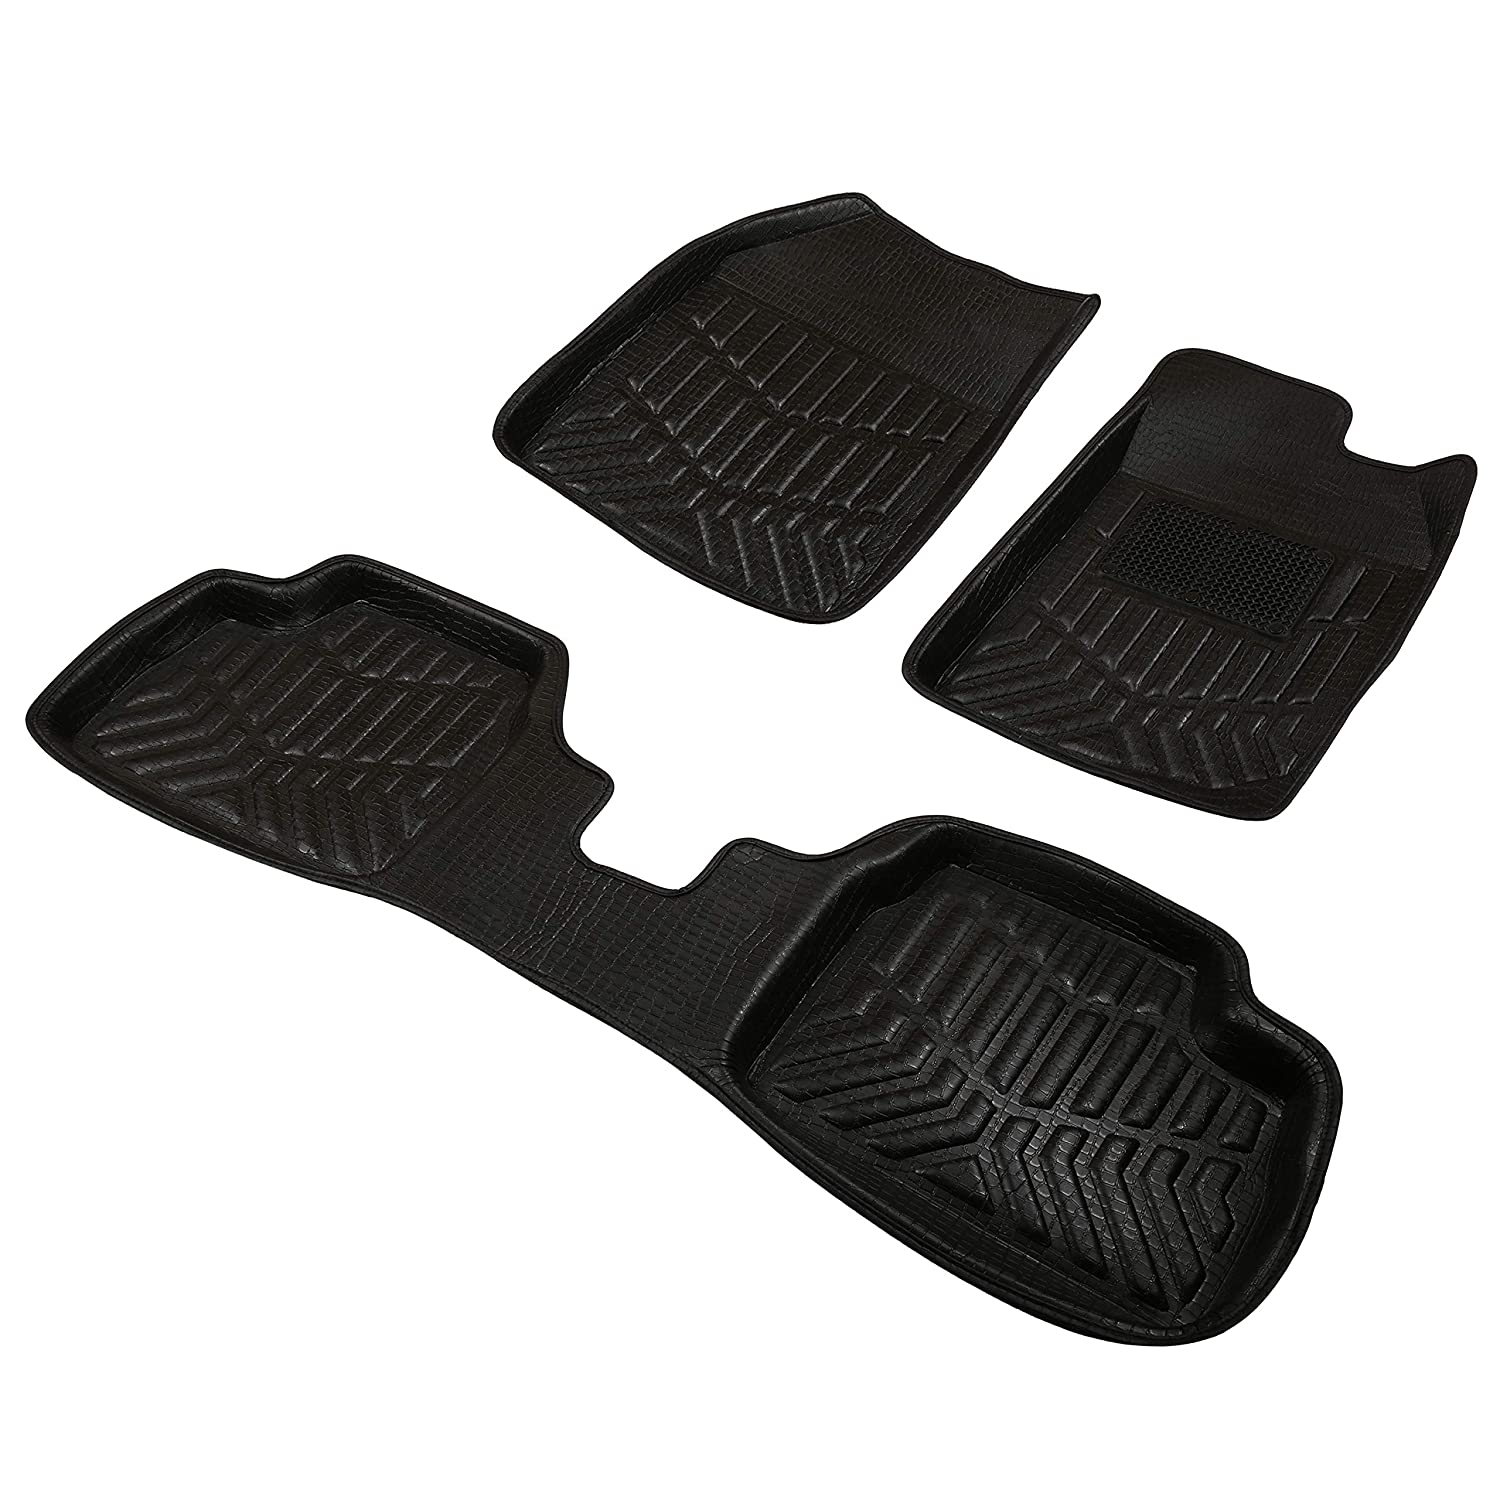 Drivn 3D Customised Car Floor Mat for Honda WRV - Black (Set of 3)